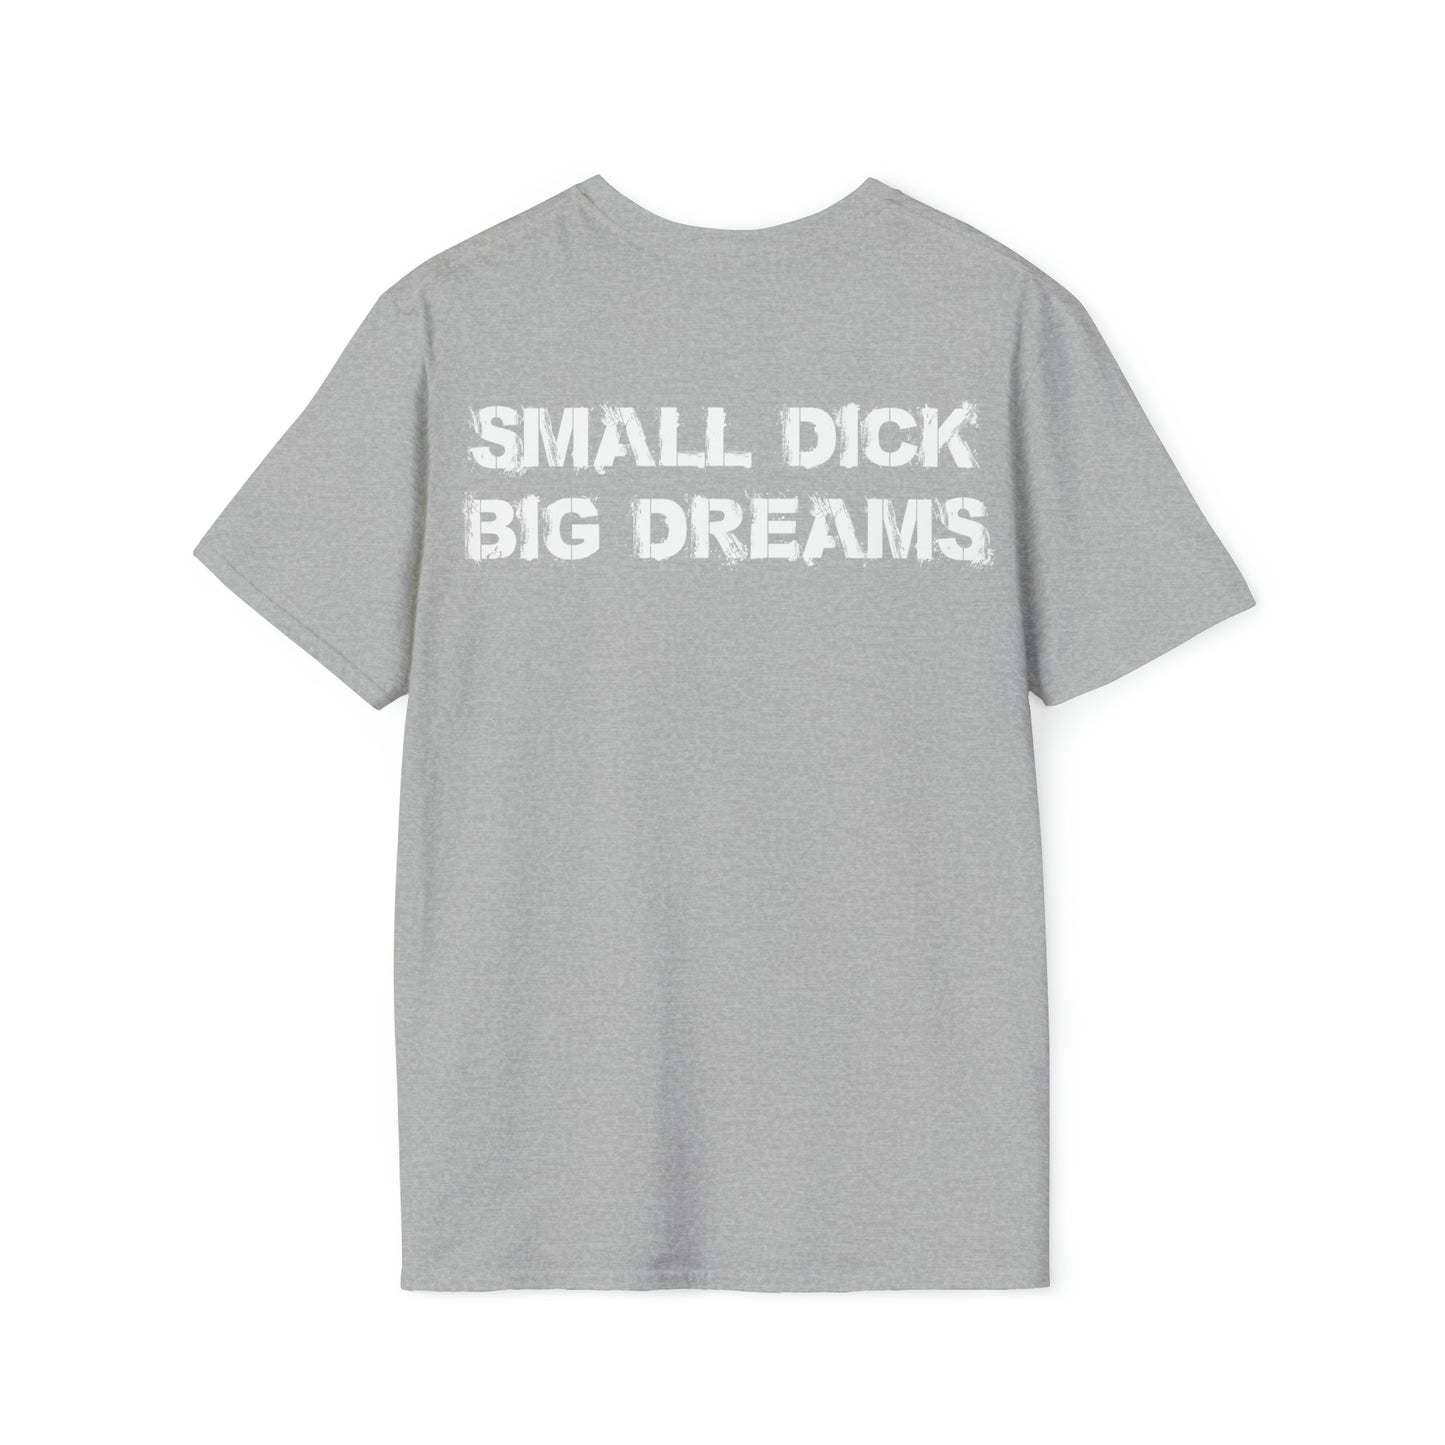 Small D!ck BIG Dreams